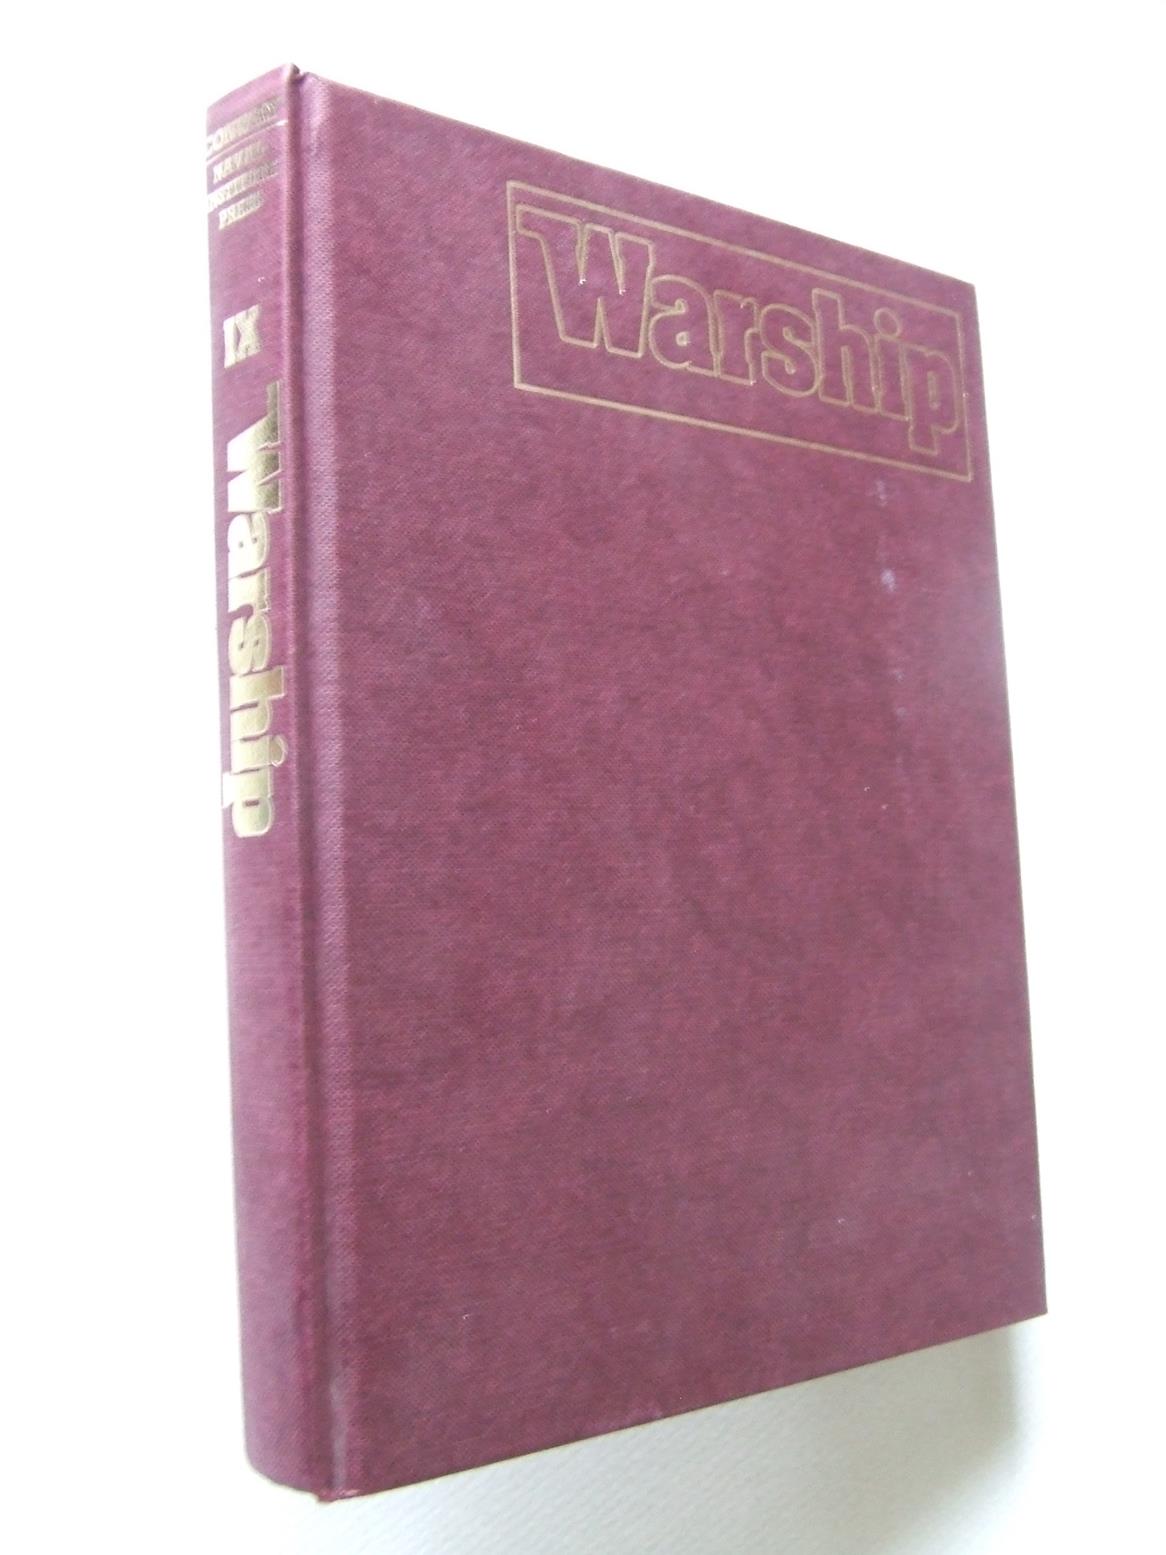 Warship volume IX (9). edited by Andrew Lambert - Lambert, Andrew [editor]